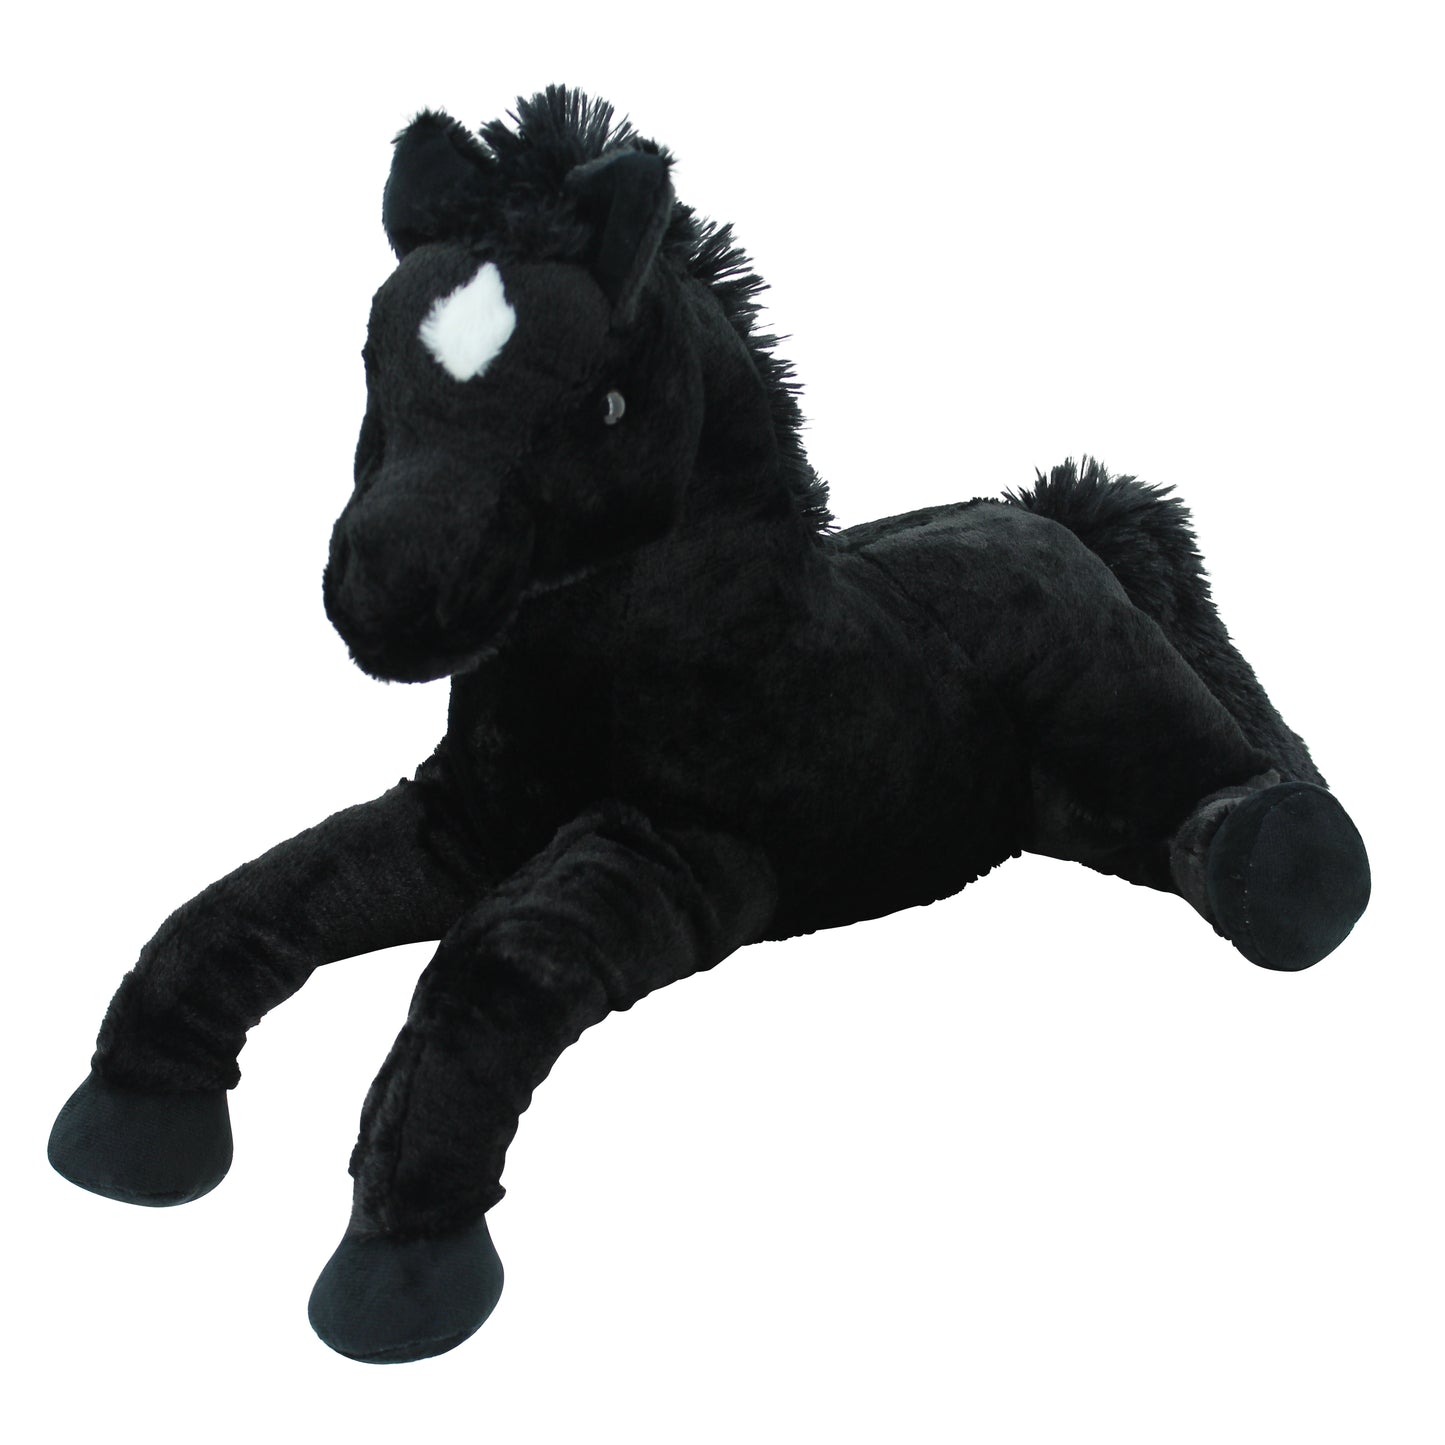 Sweety Toys 5185 Kuscheltier Pferd Fohlen schwarz Fohlen kuschelweich Plüschpferd liegend